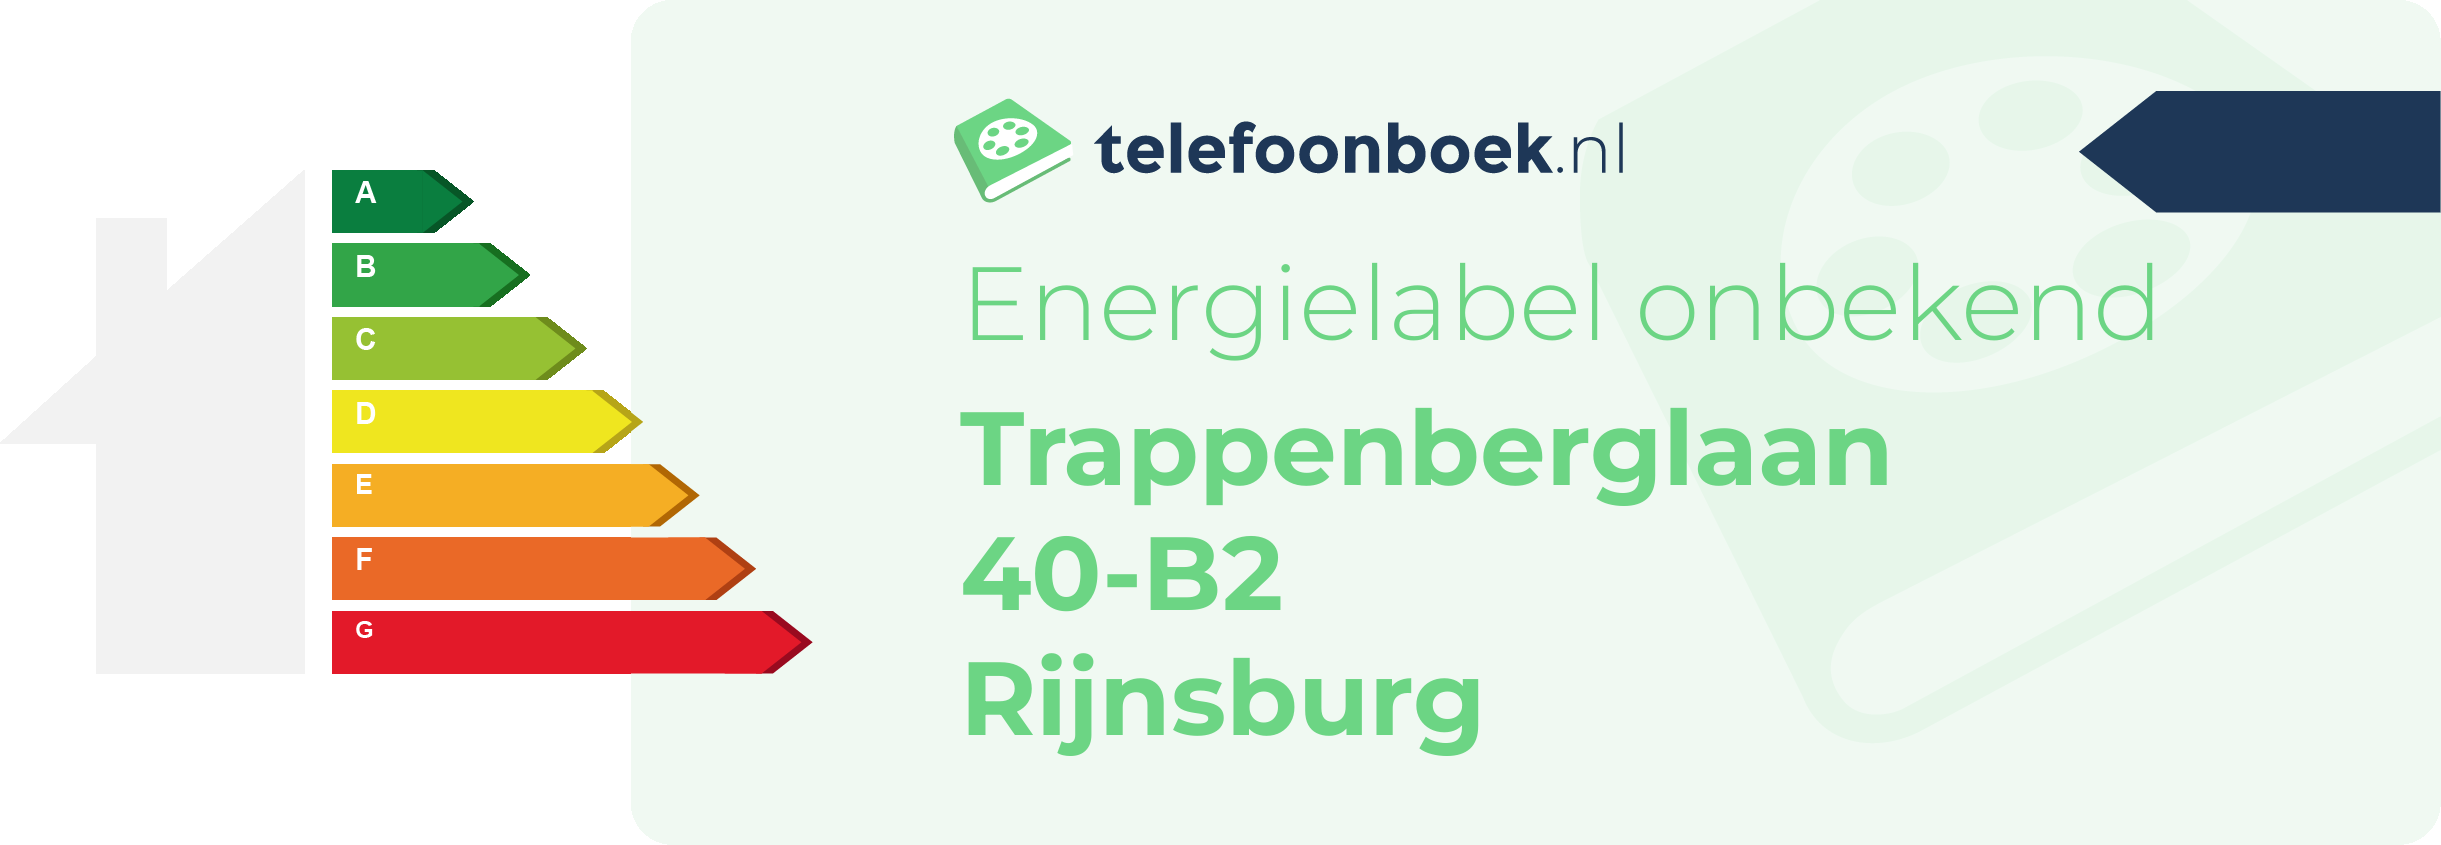 Energielabel Trappenberglaan 40-B2 Rijnsburg